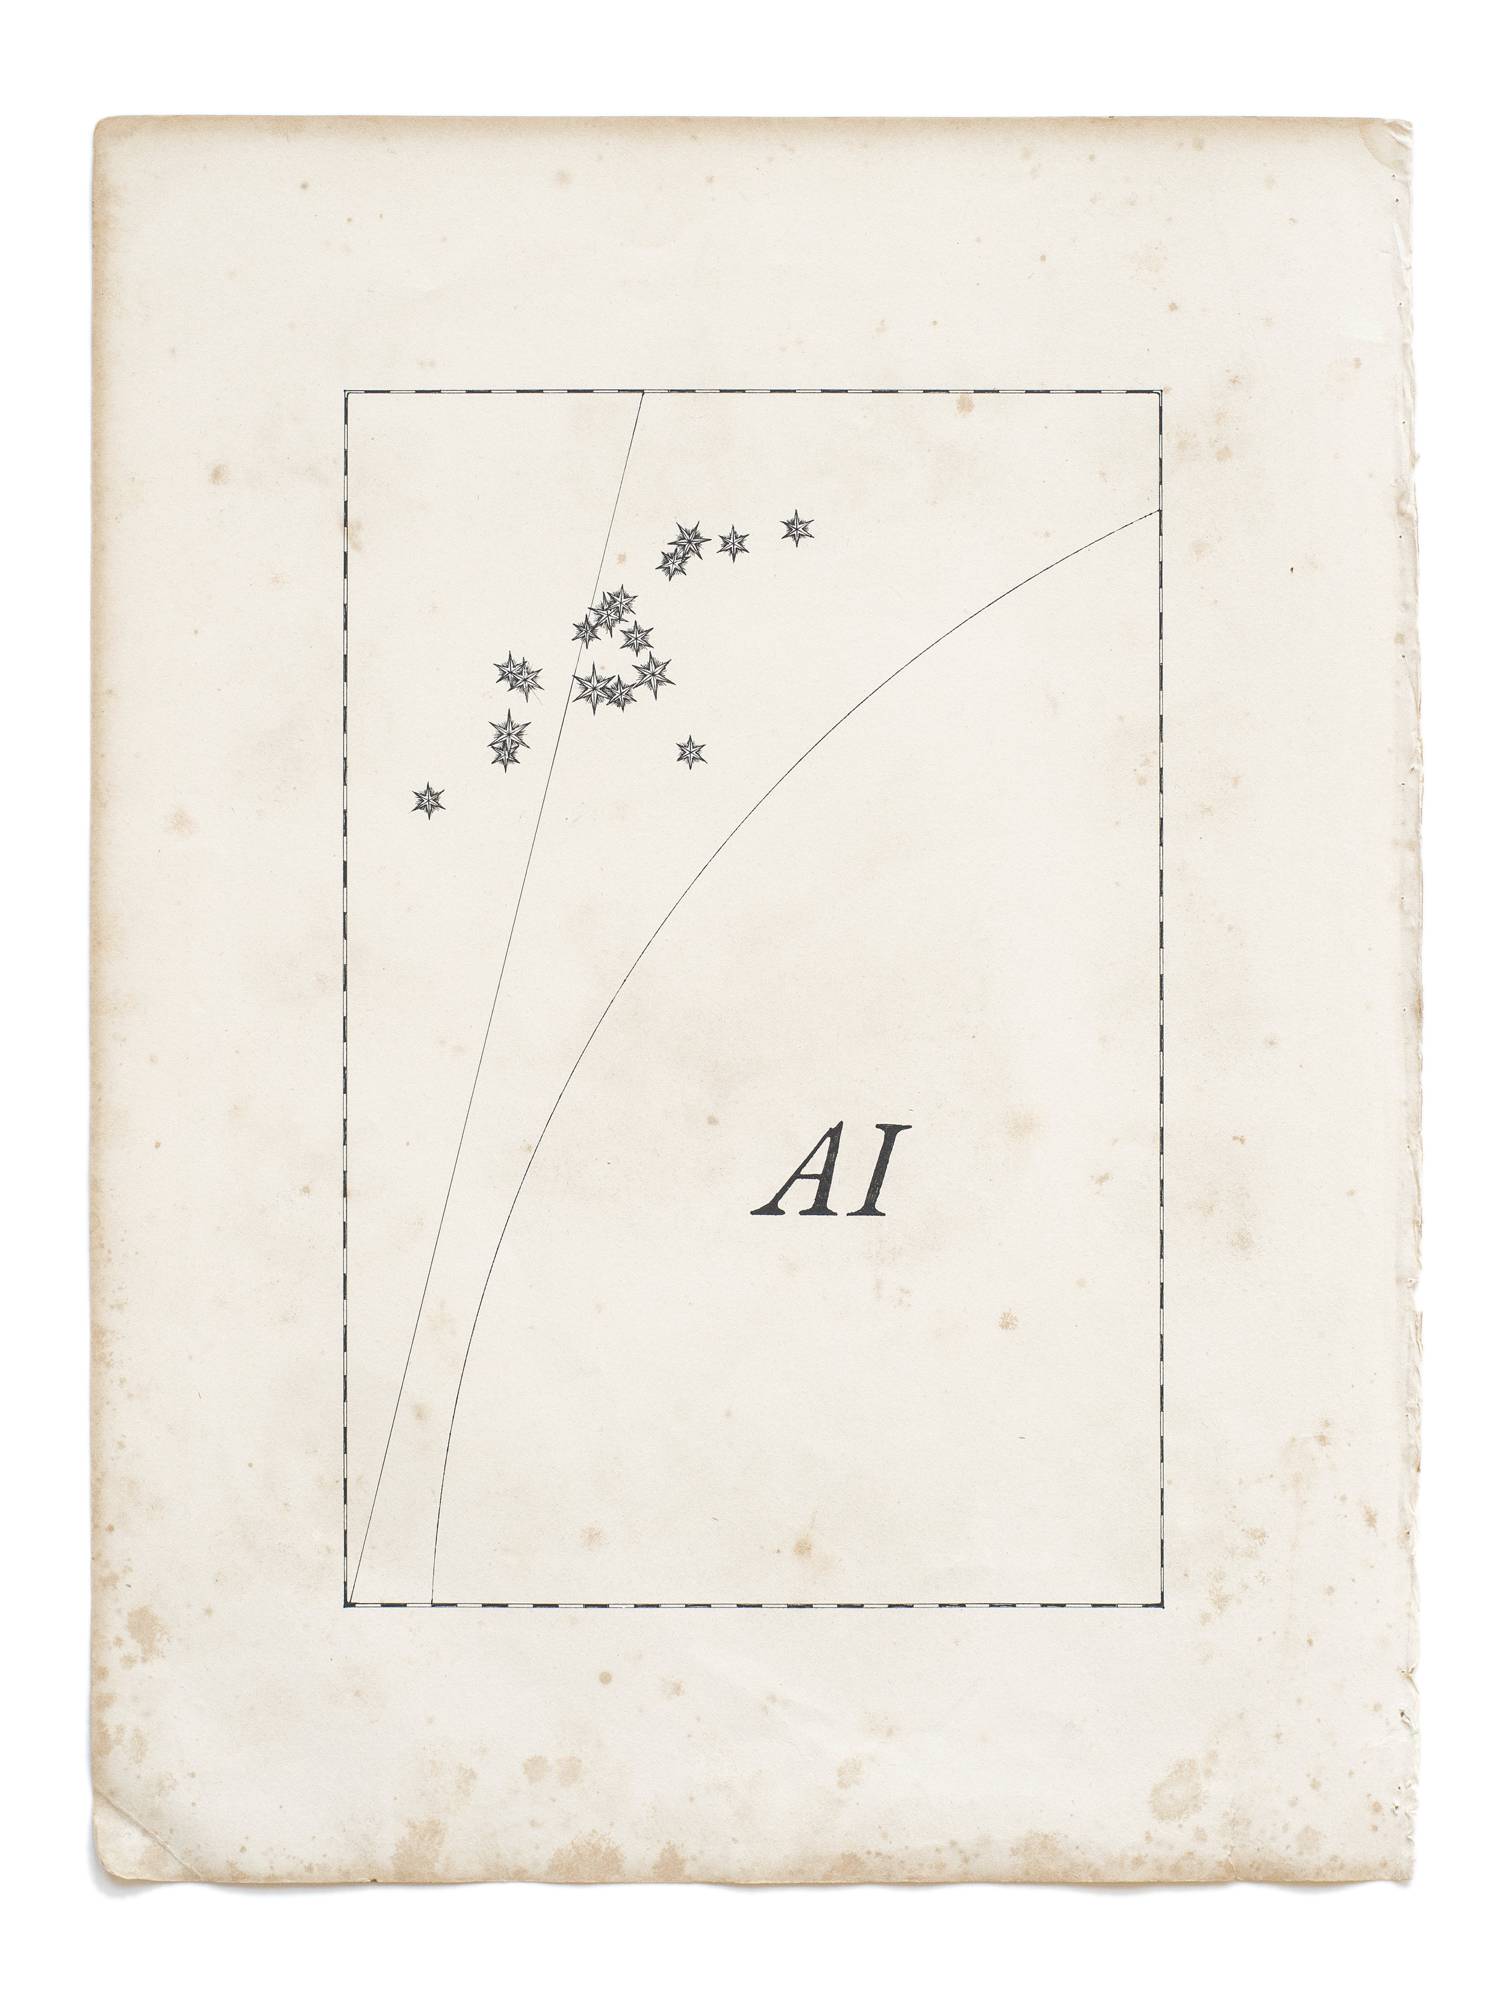 AI, 2021 Filzstift auf historischem Papier, 34 x 26 cm